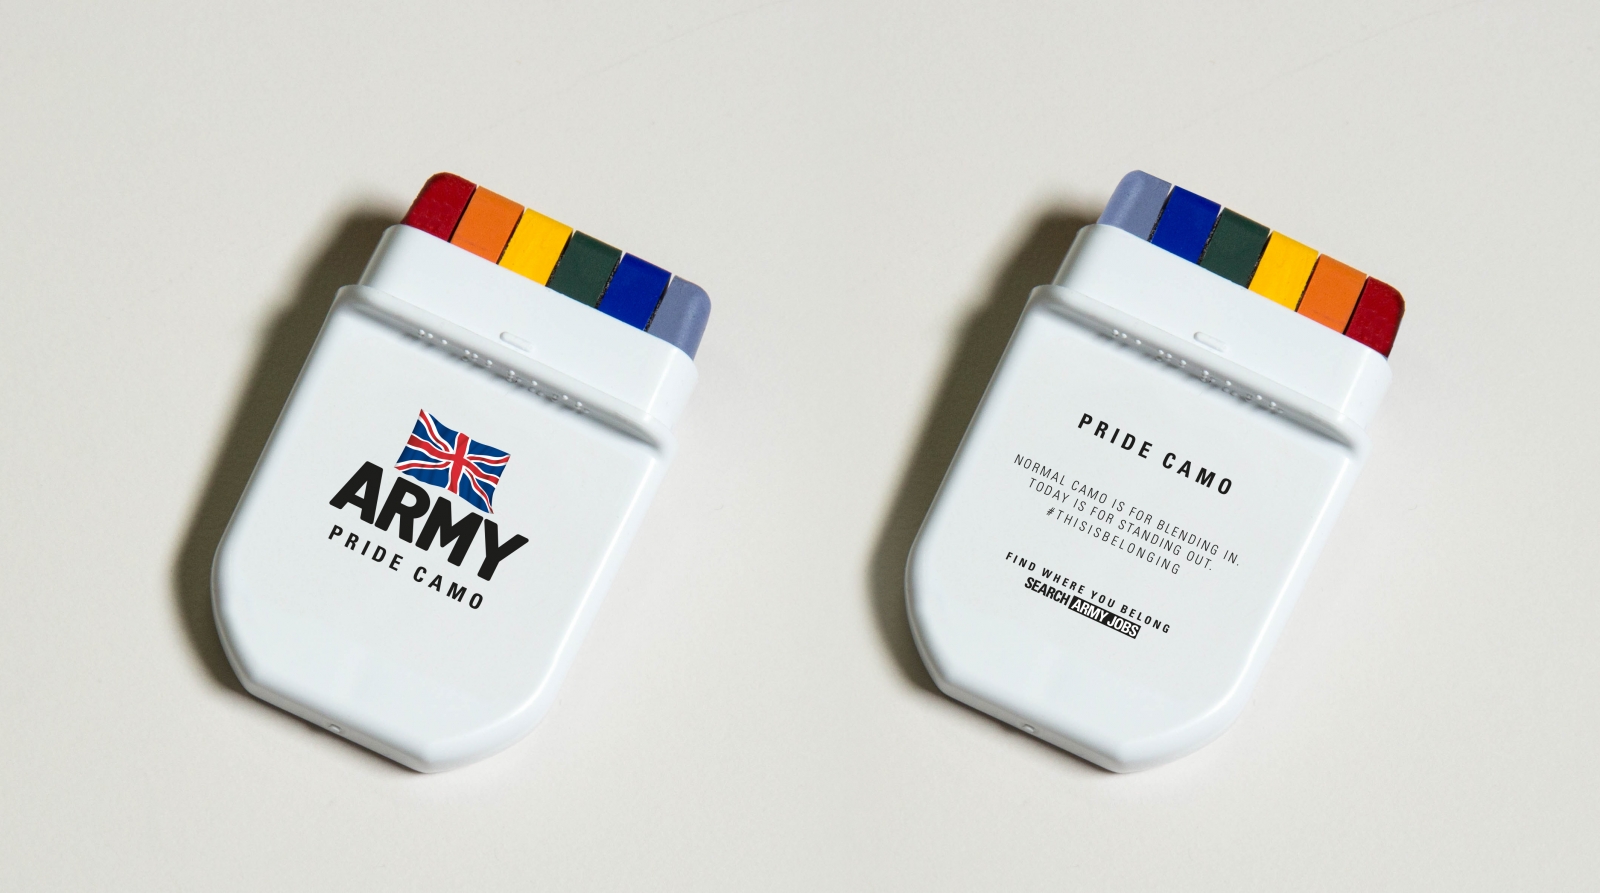 Army Pride camo cream